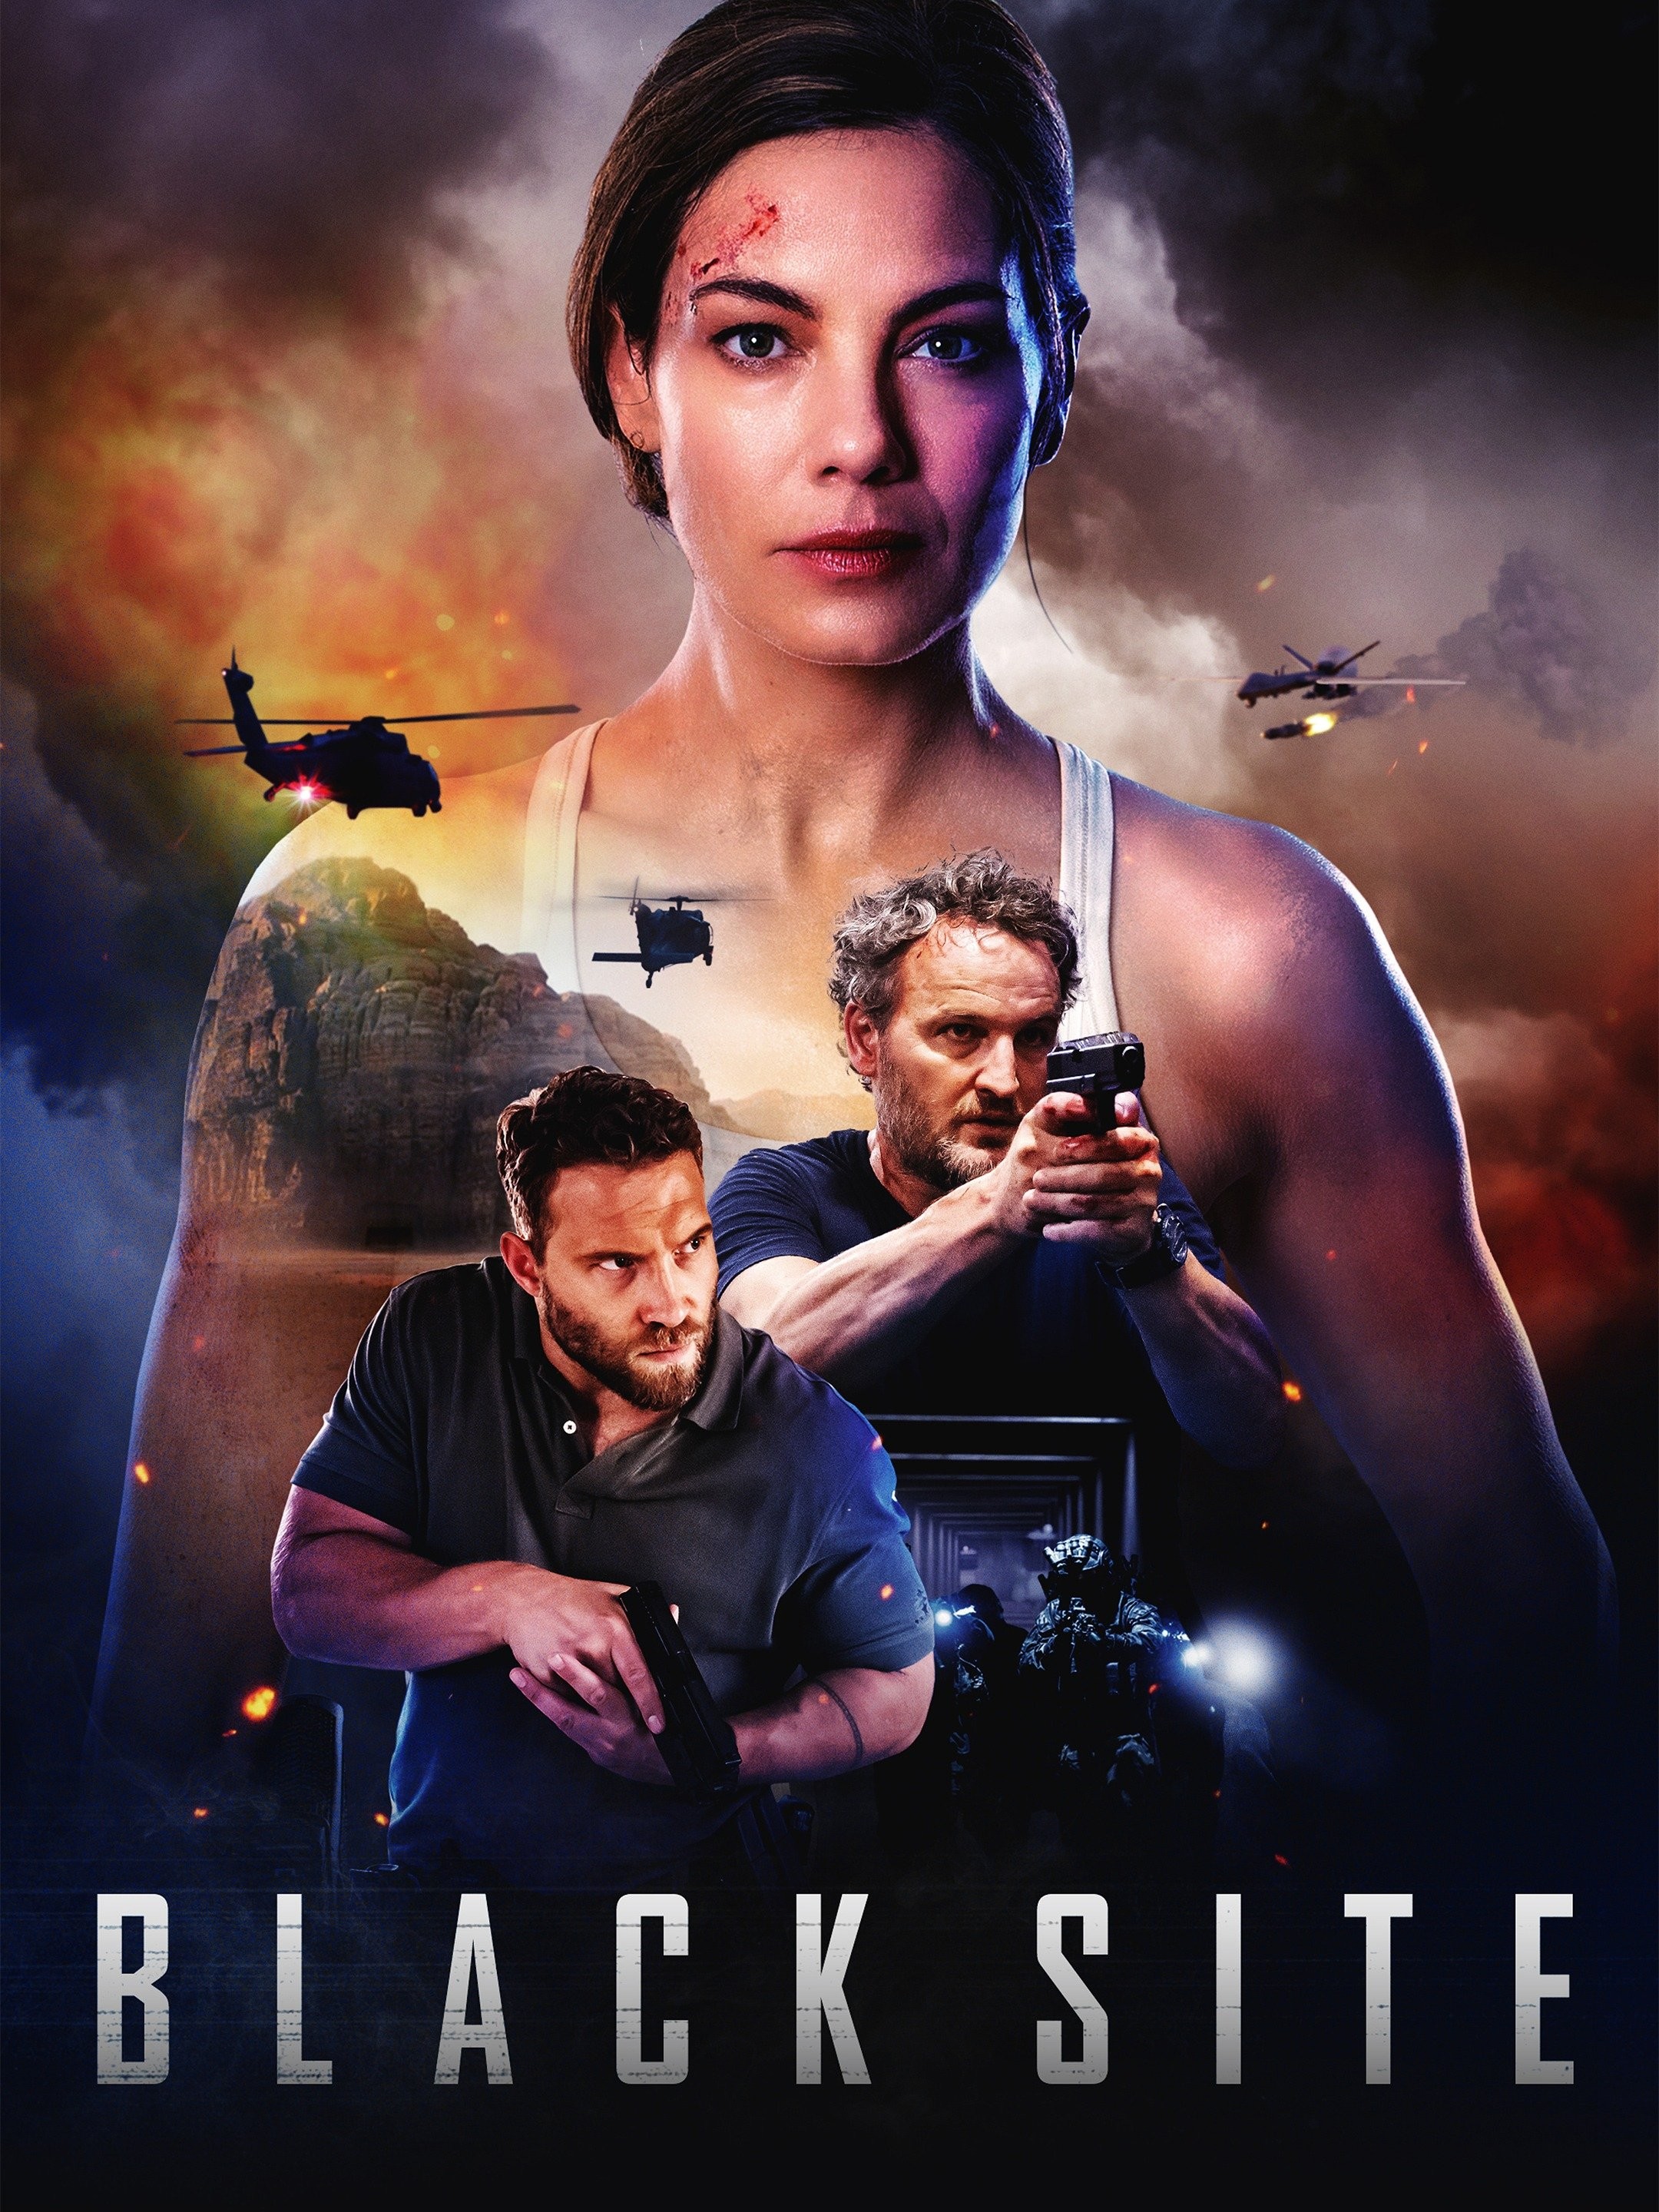 Black Site (2018) - IMDb